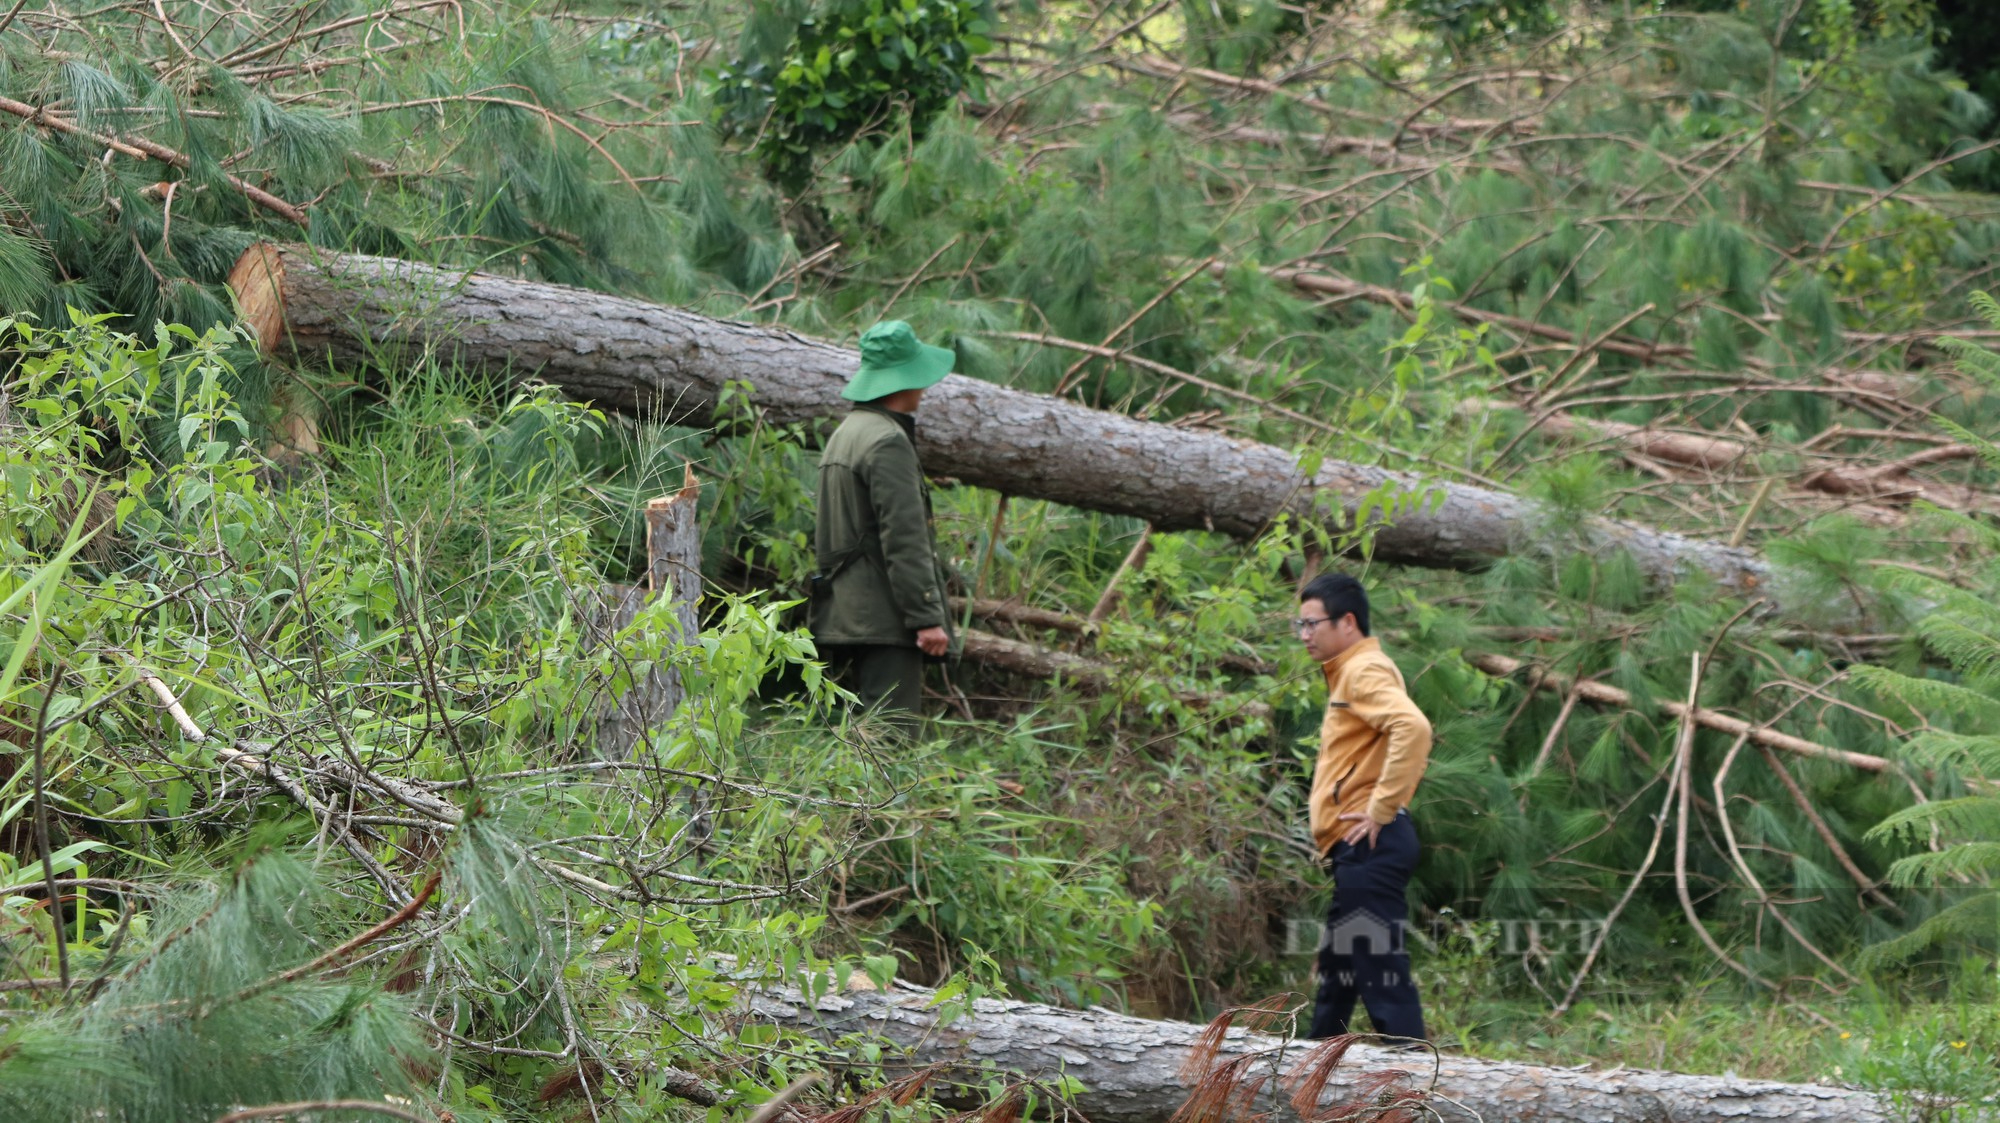 Phá rừng thông ở Lâm Đồng: Hàng trăm cây thông 3 lá nằm la liệt, huyện hỏa tốc chỉ đạo xử lý - Ảnh 3.